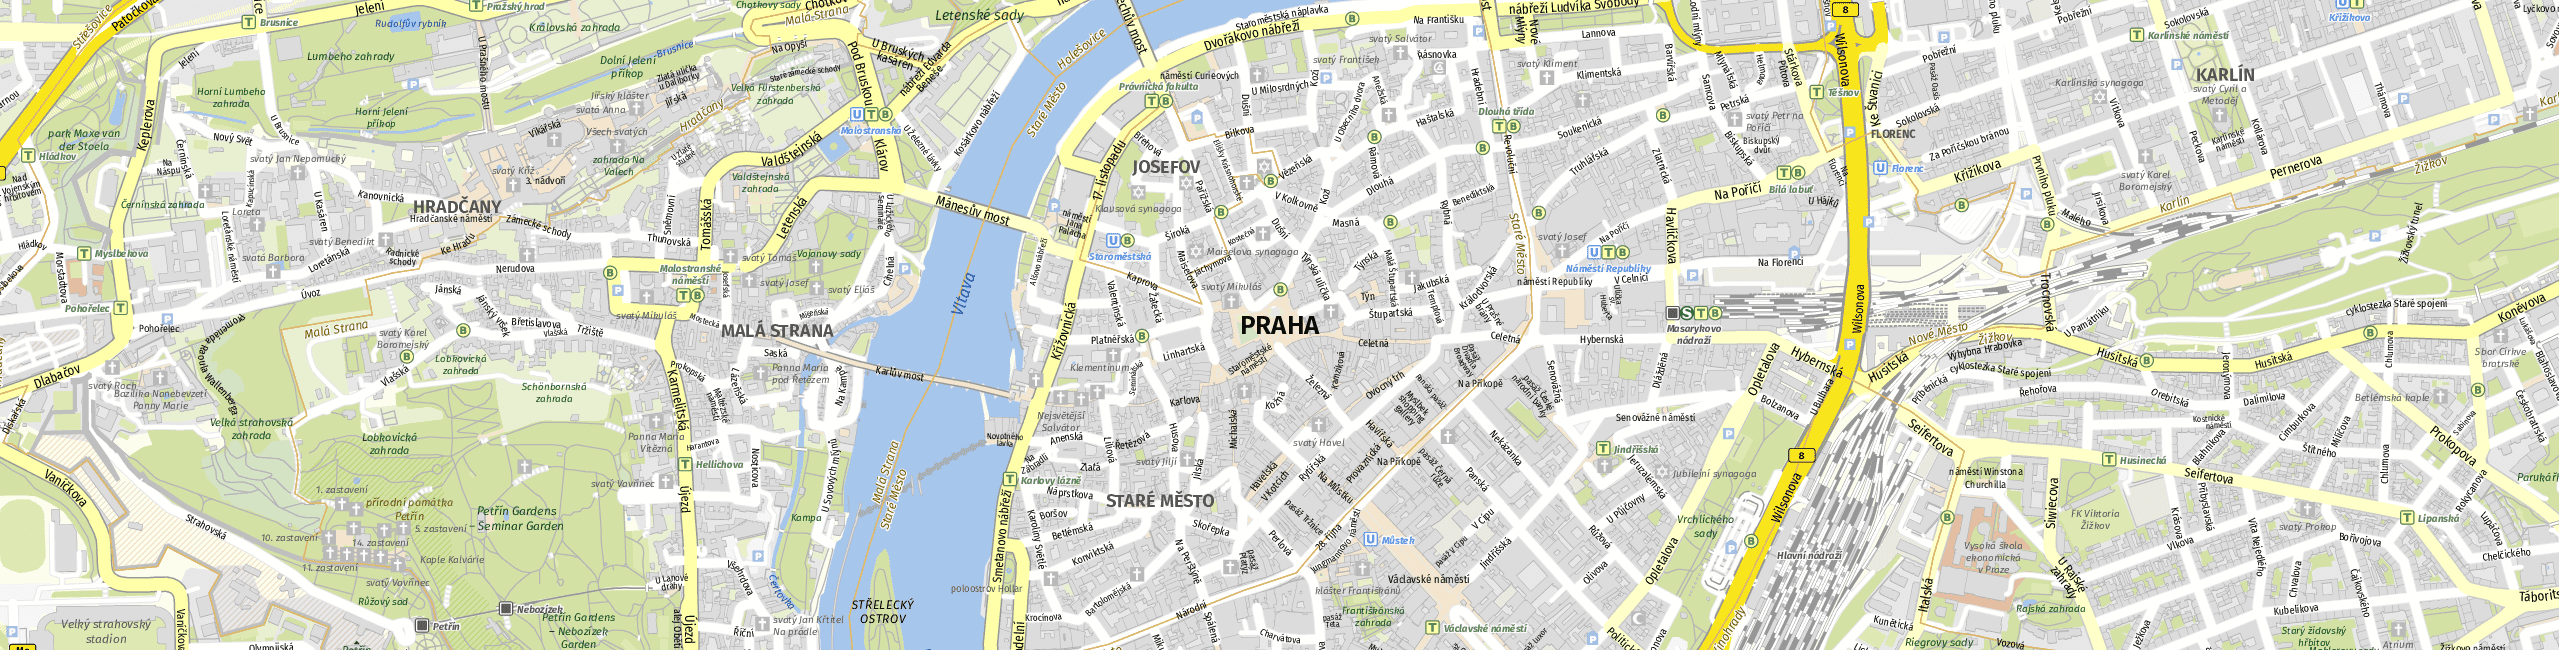 Stadtplan Prag zum Downloaden.